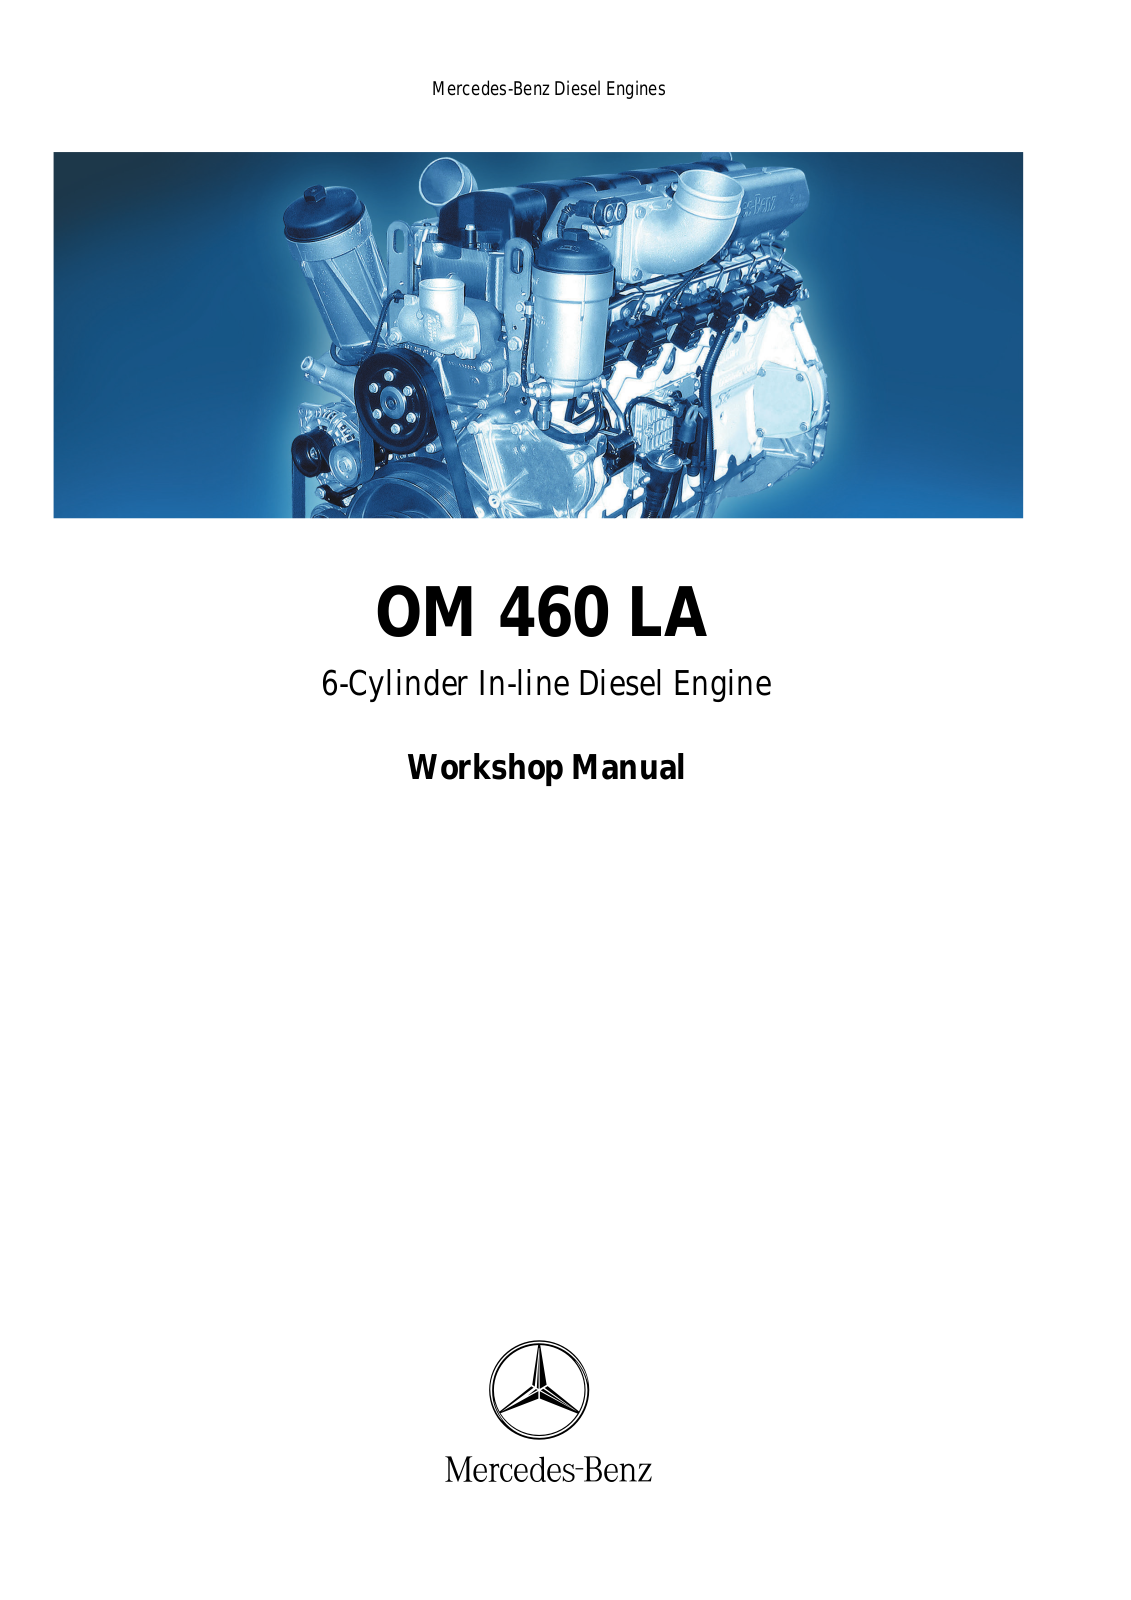 Mercedes Benz OM 460 LA Workshop Manual